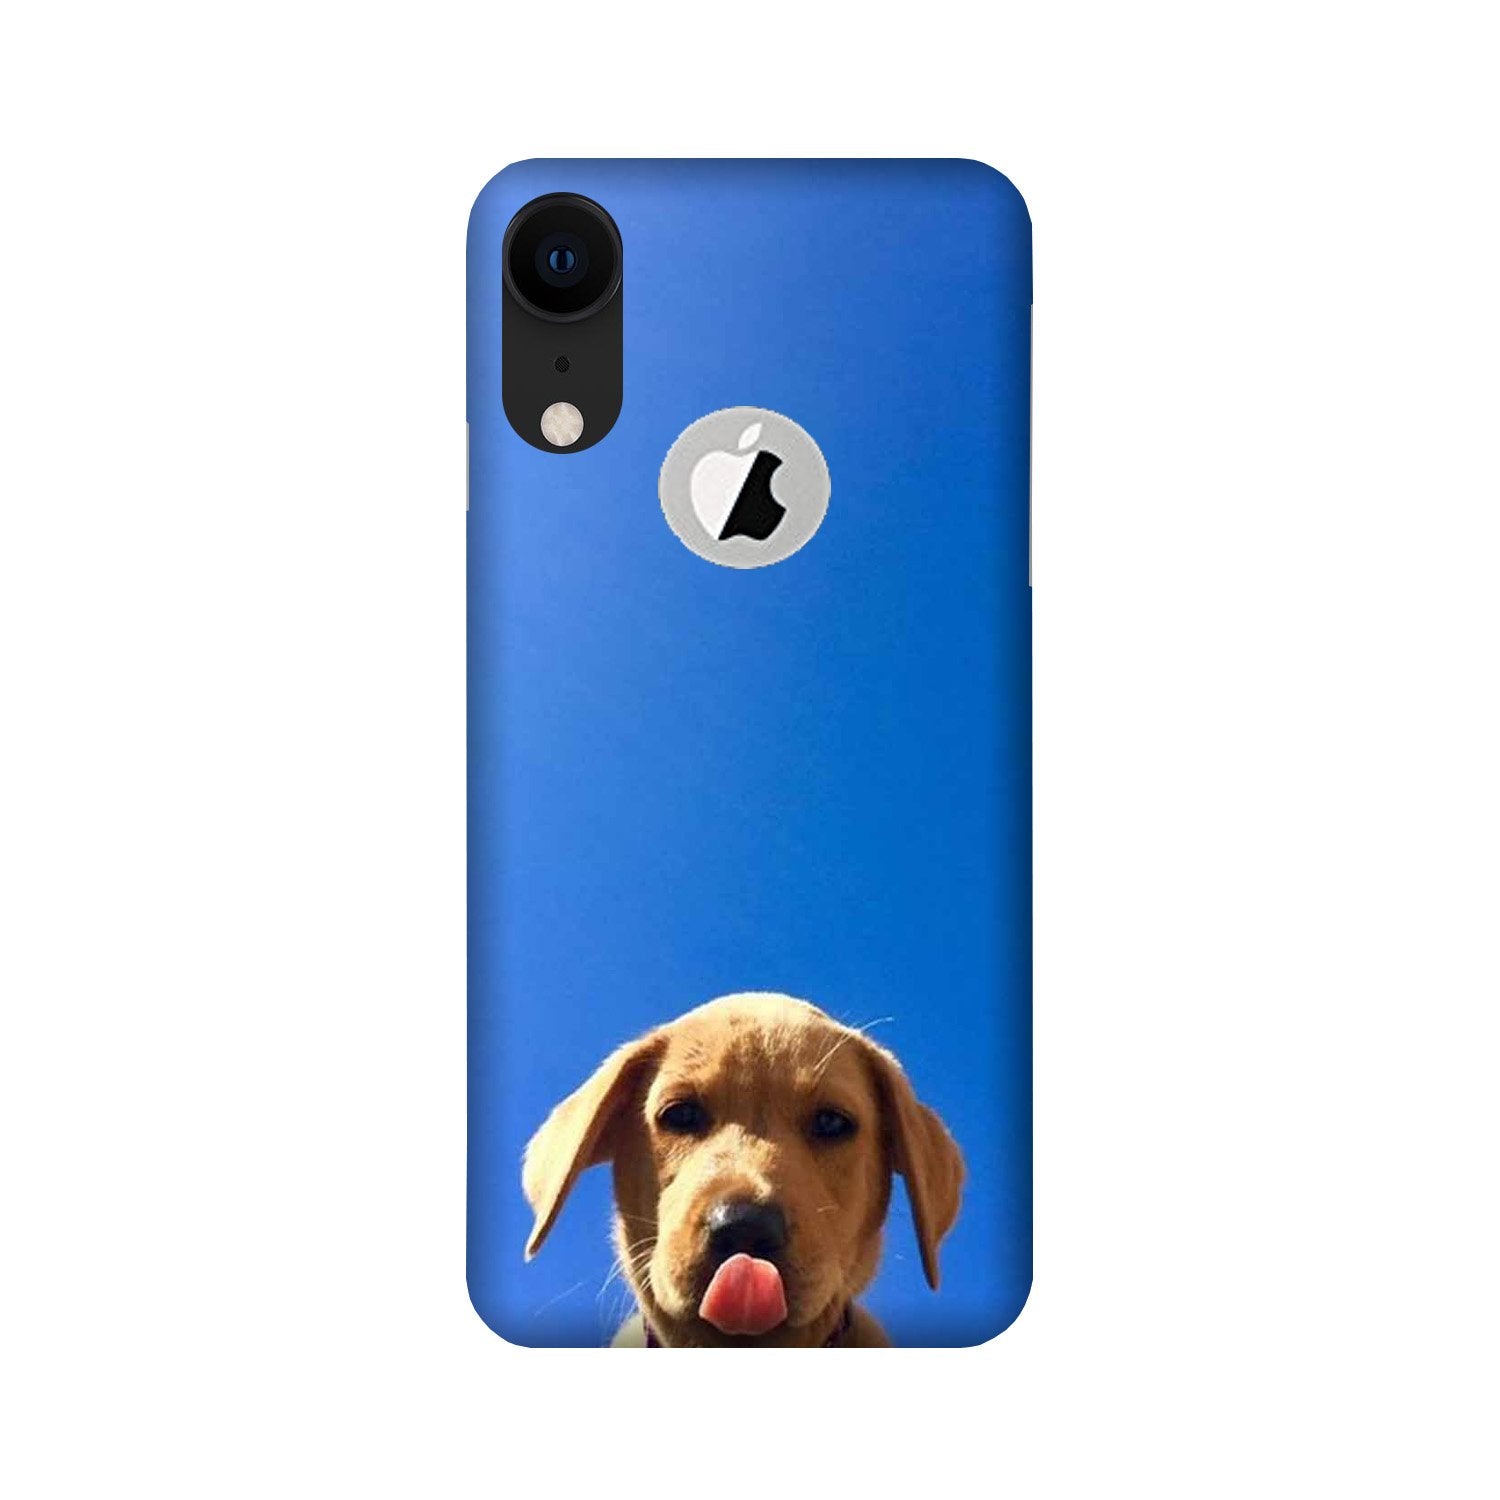 Dog Mobile Back Case for iPhone Xr logo cut (Design - 332)